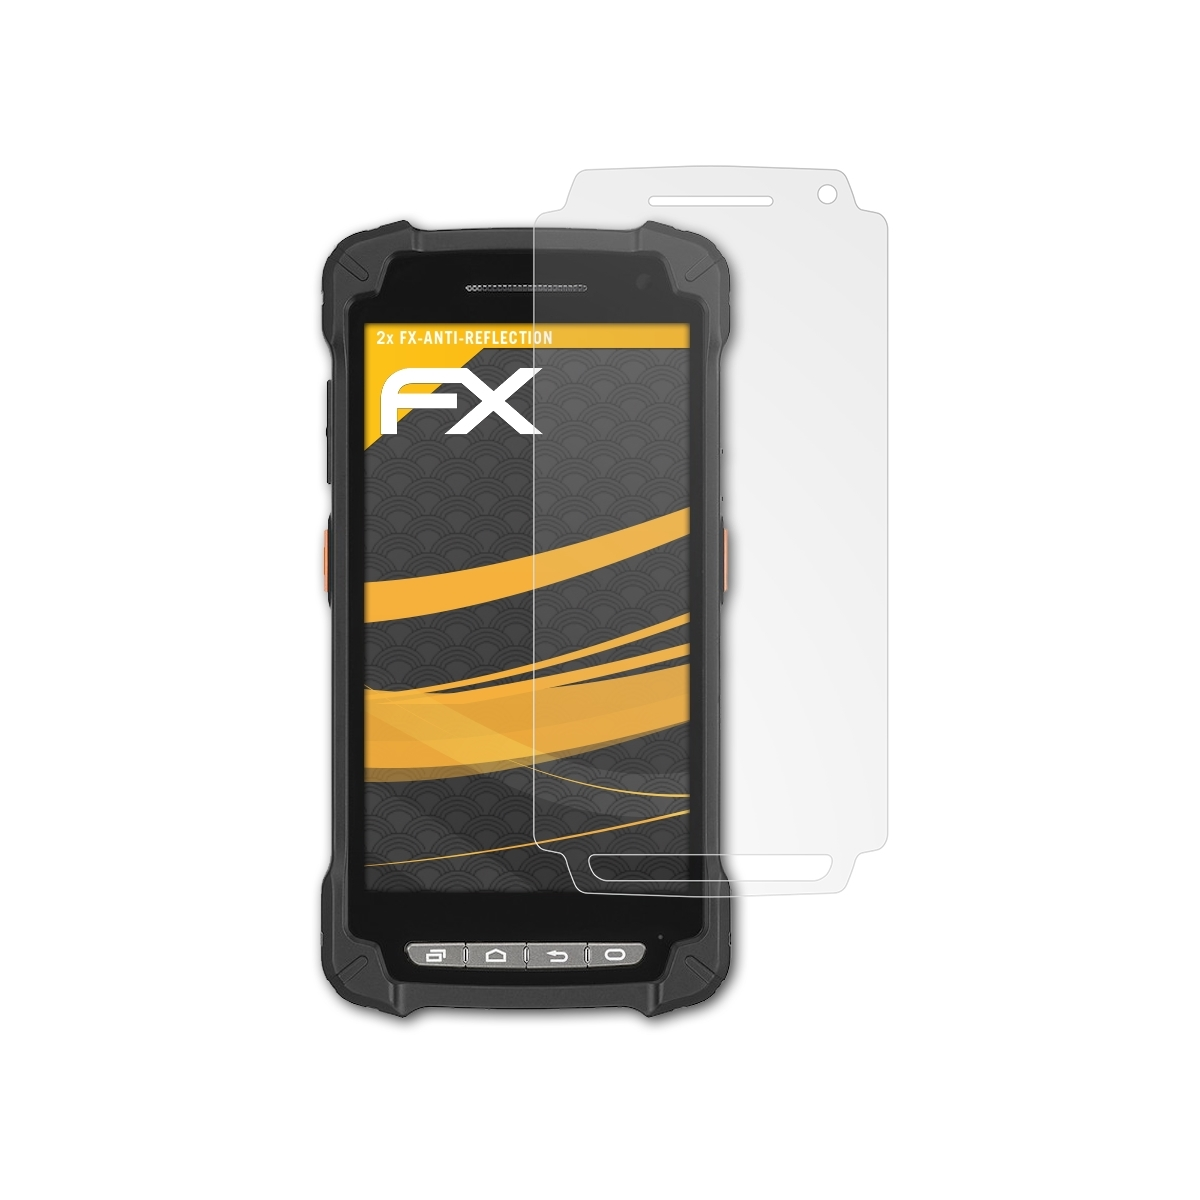 Casio FX-Antireflex 2x ATFOLIX IT-G400) Displayschutz(für